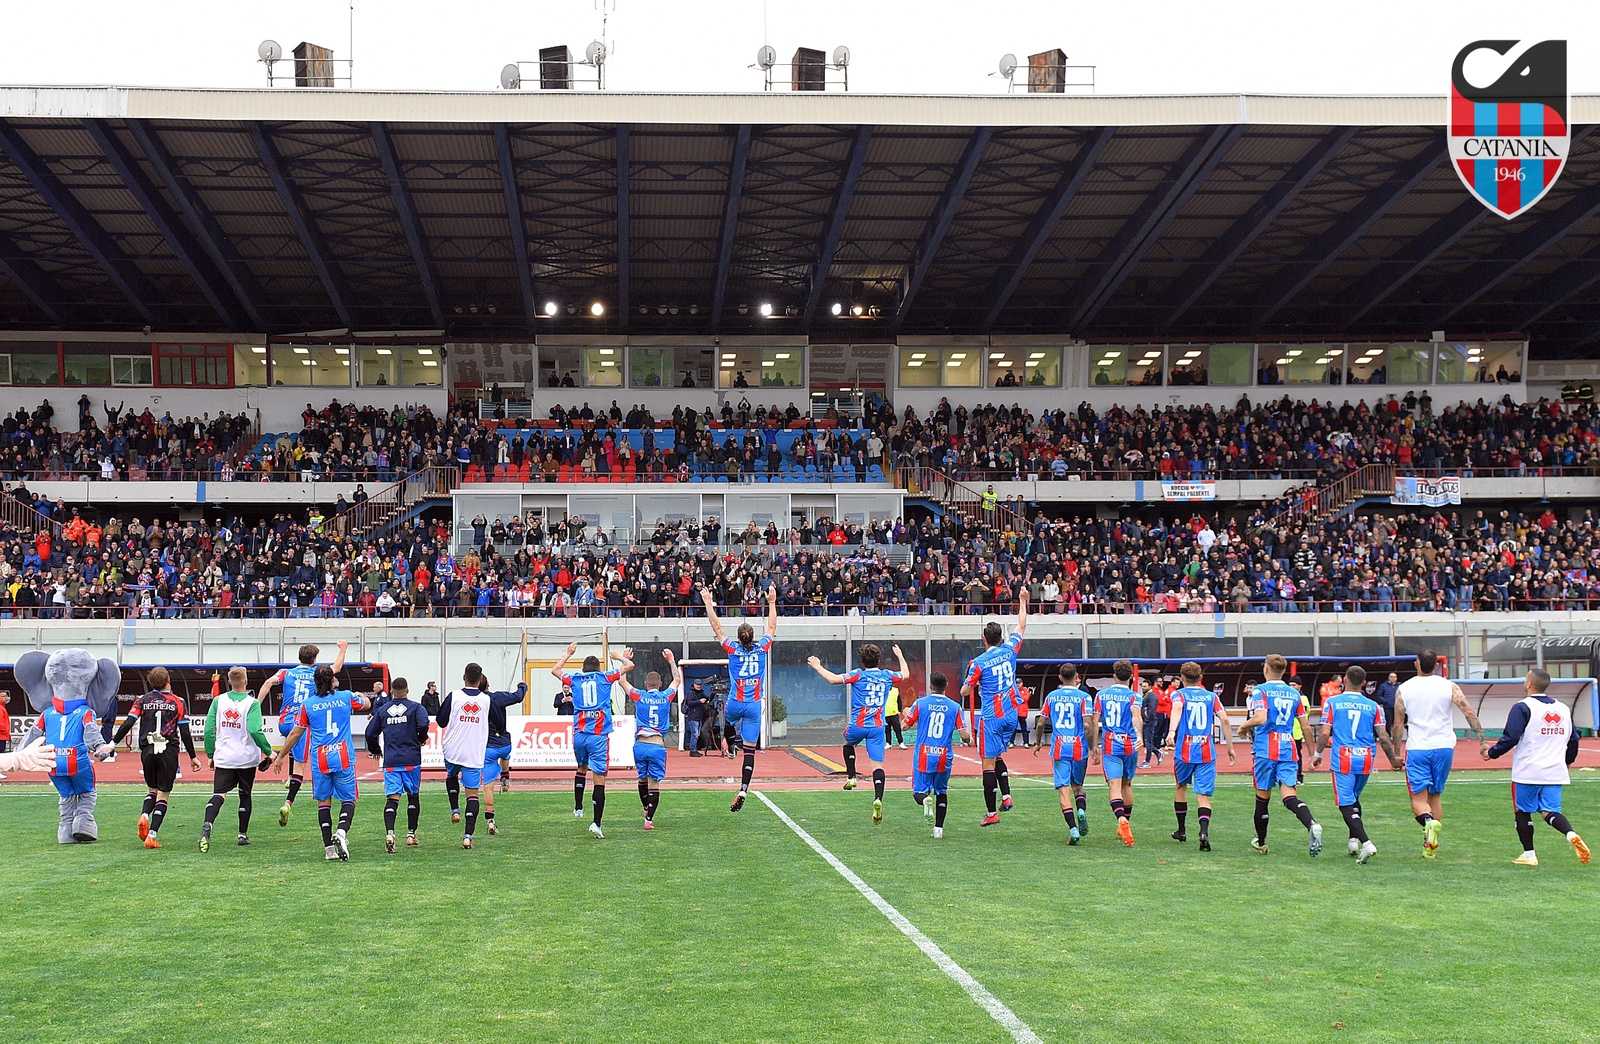 Serie D, il resoconto di Catania-Lamezia Terme (2-0)